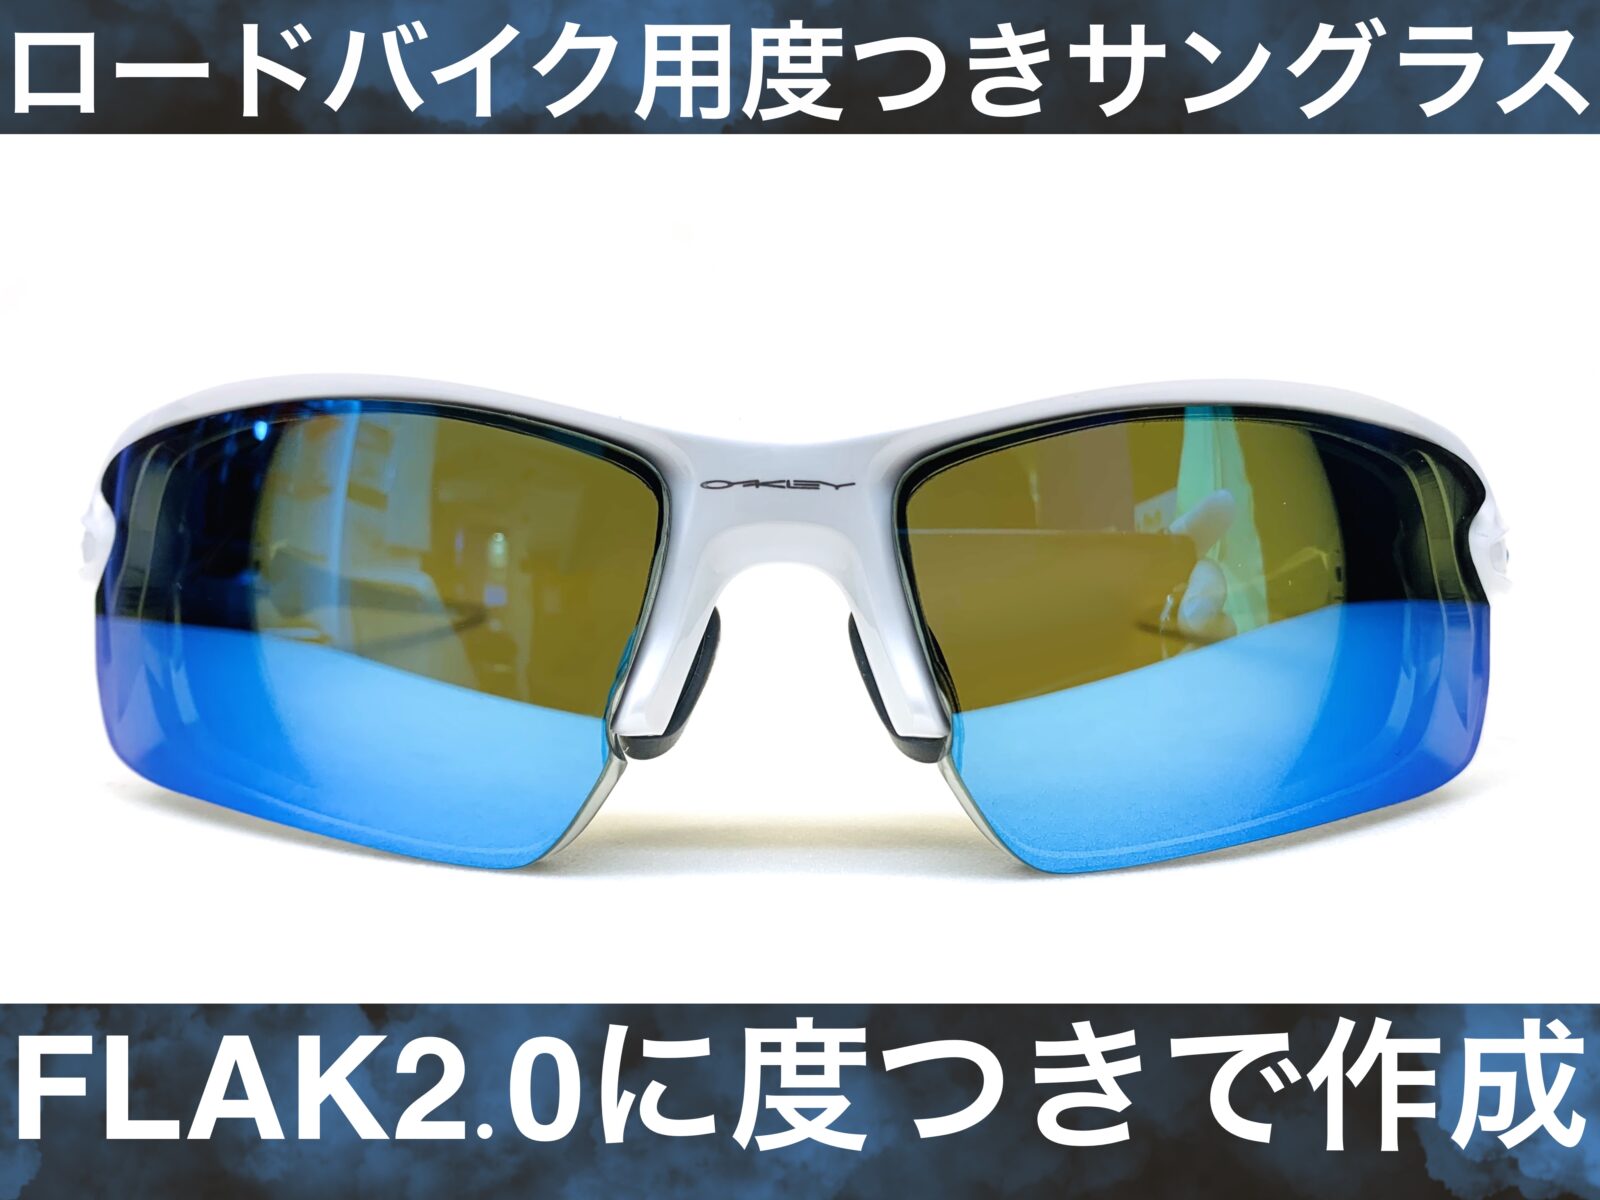 ロードバイク用で度つきサングラス作成/OAKLEY – 名古屋栄の 